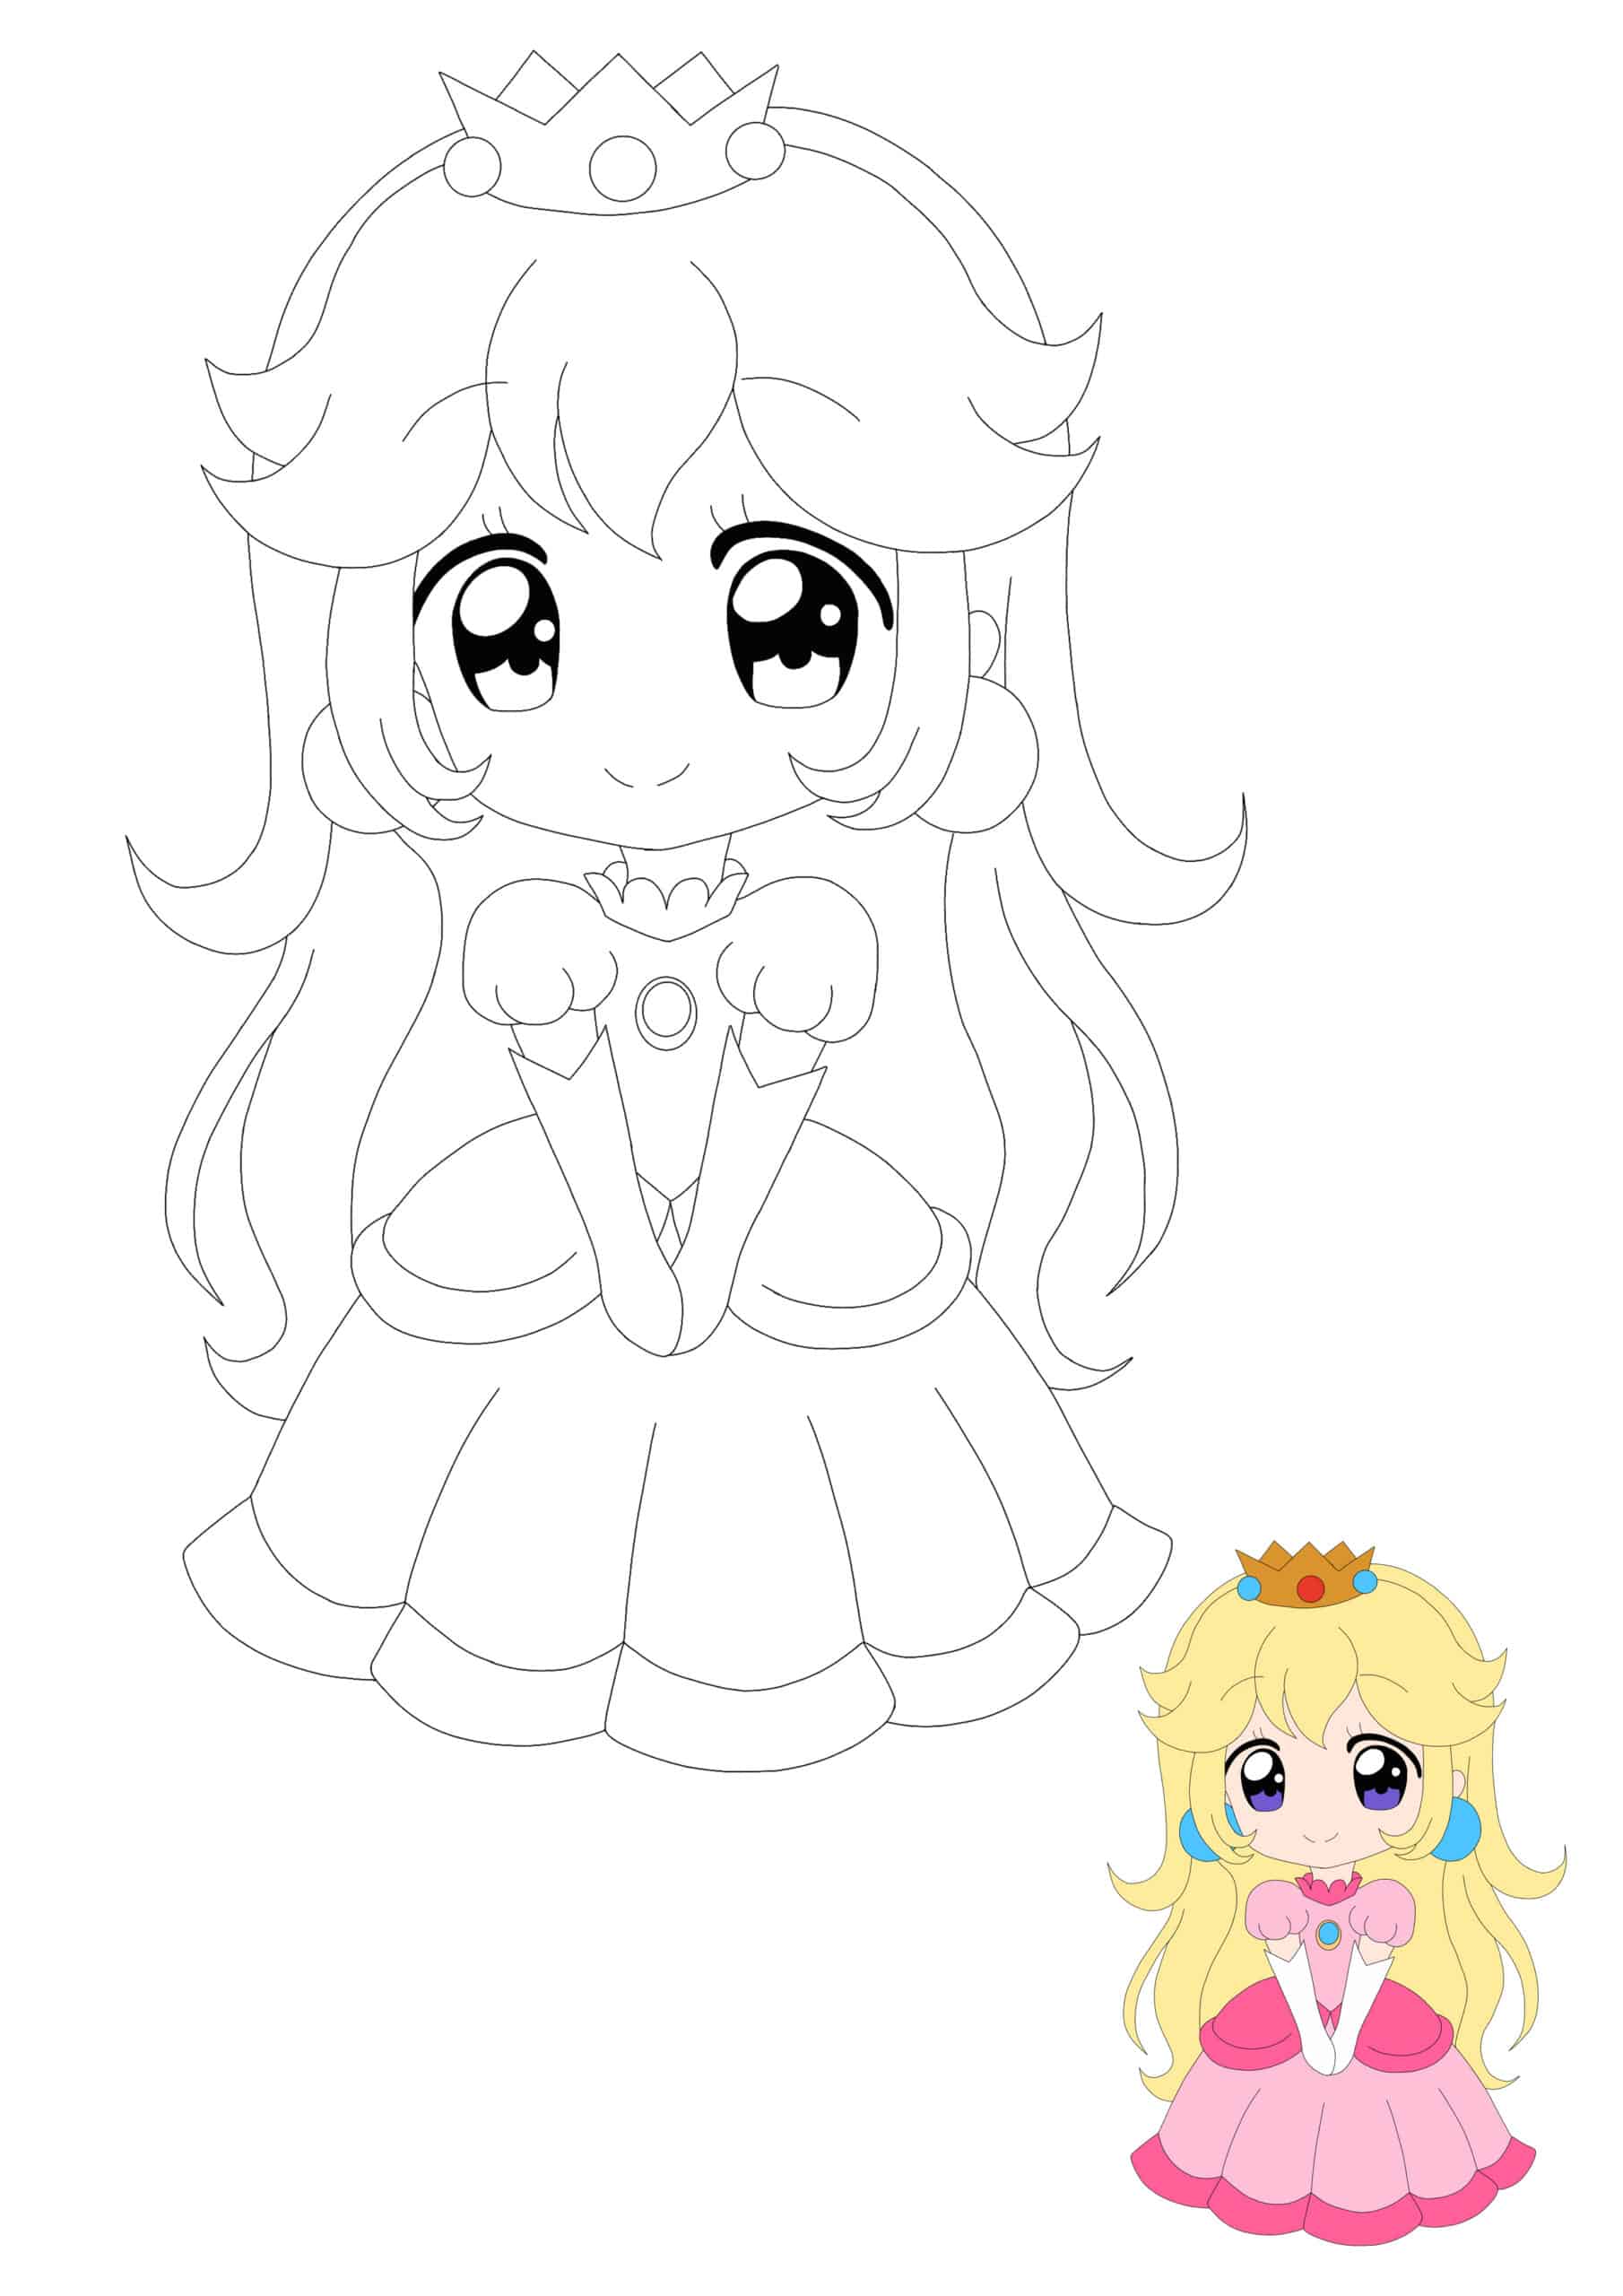 Princess Peach Anime Coloring Pages - SheetalColor.com